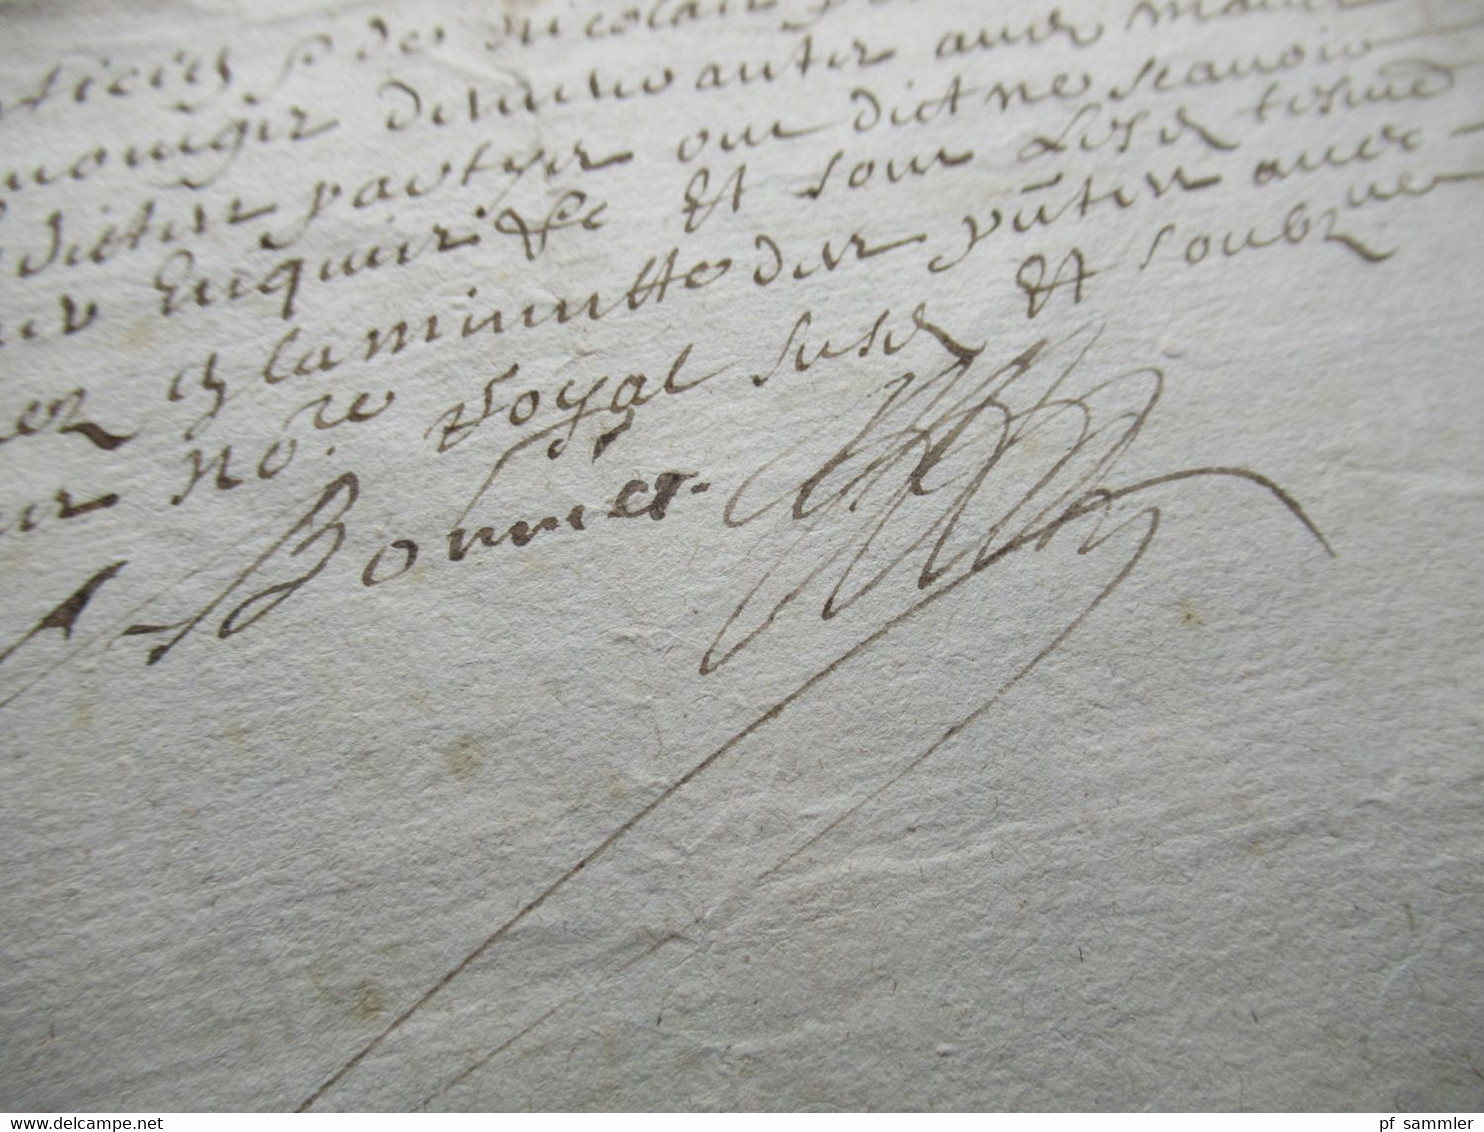 Frankreich Brief / Dokument um 1670 / 17. Jahrhundert mit Autograph / Schnörkelunterschrift!